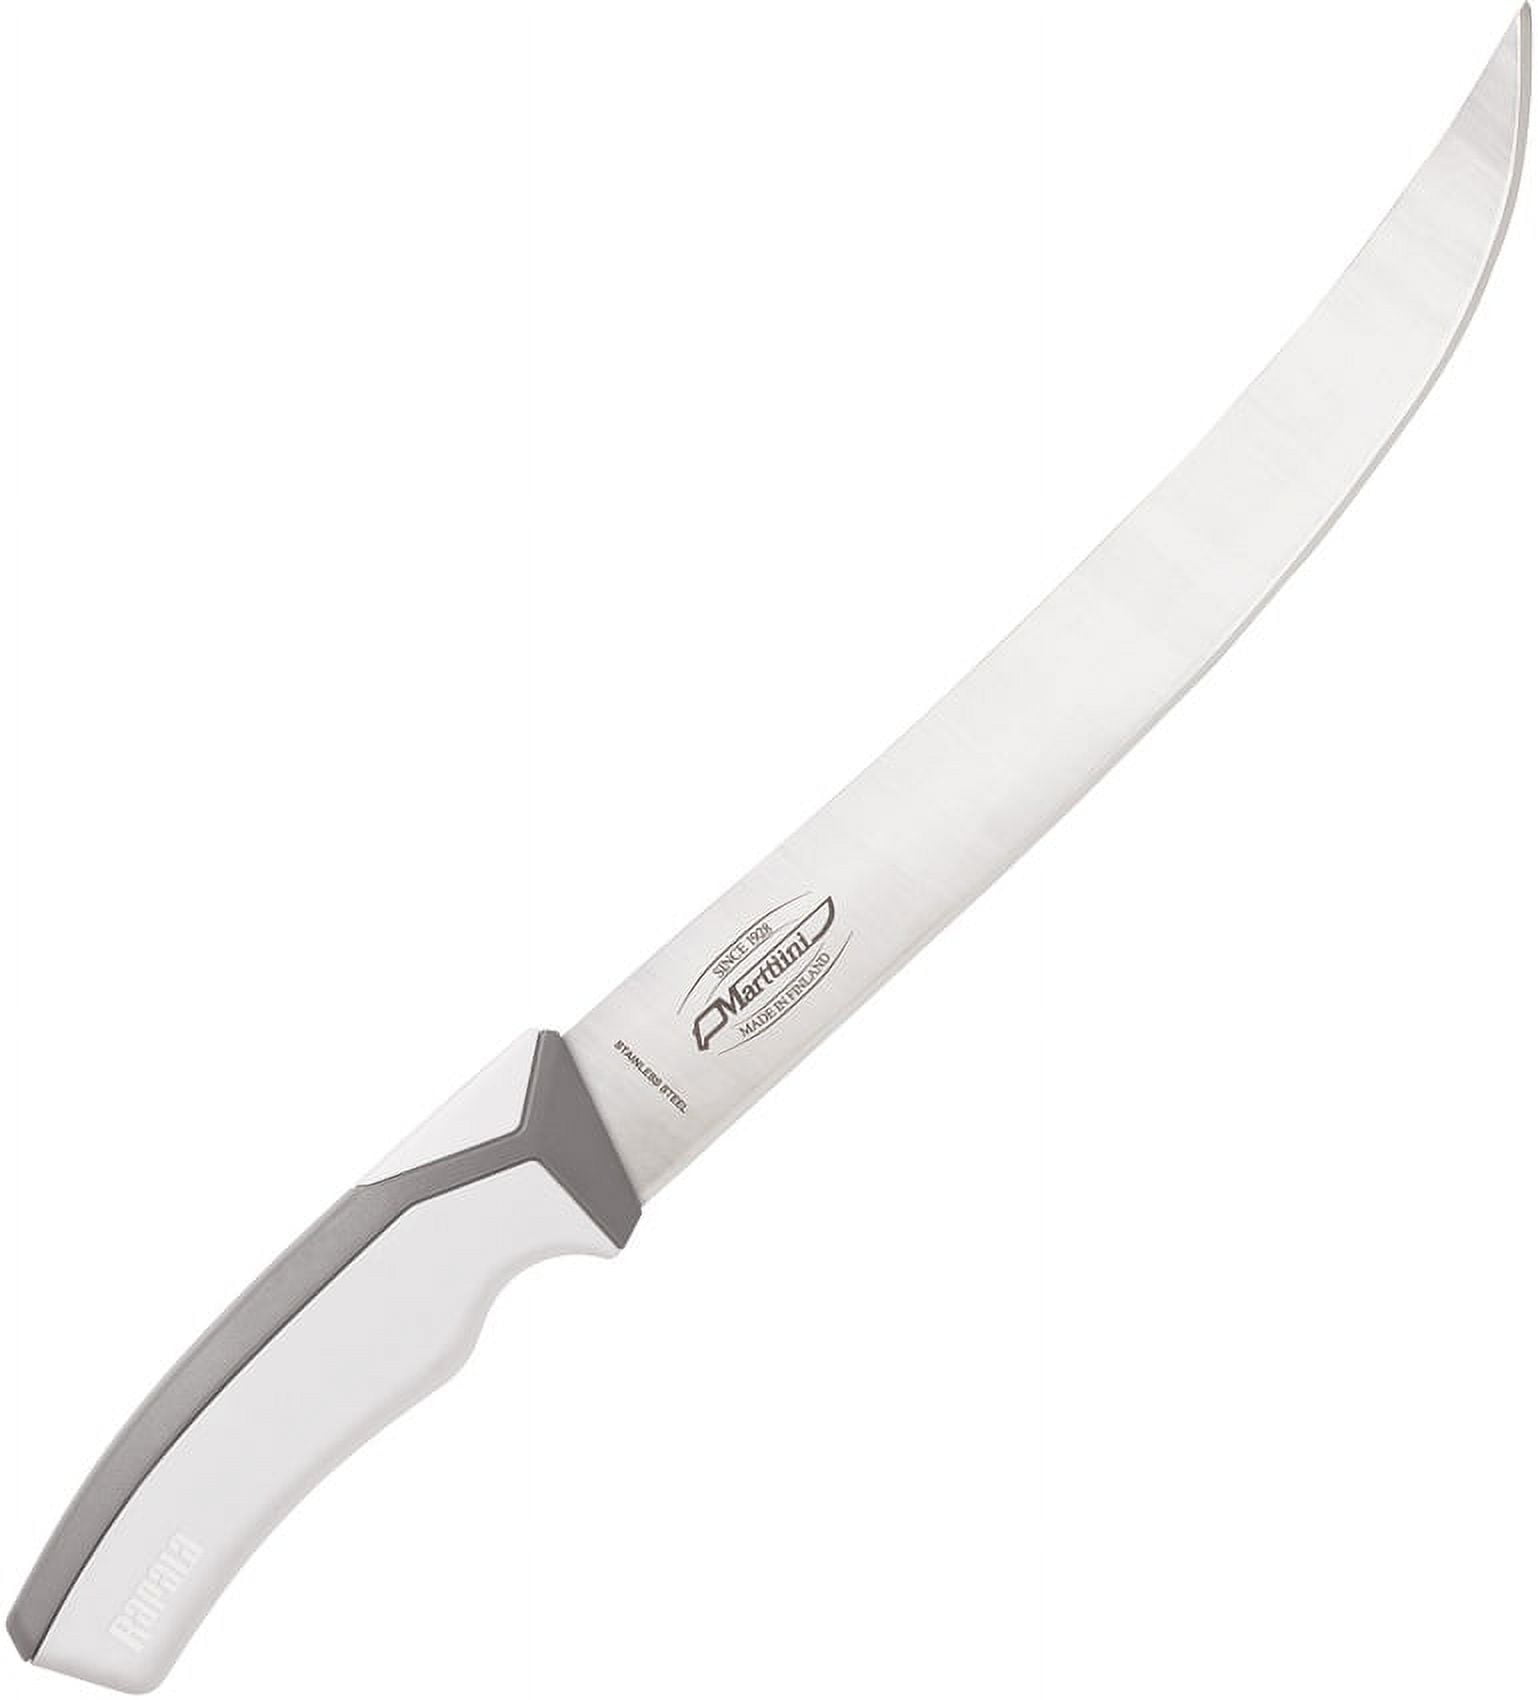 Big Fillet Knife, 12-inch Curved